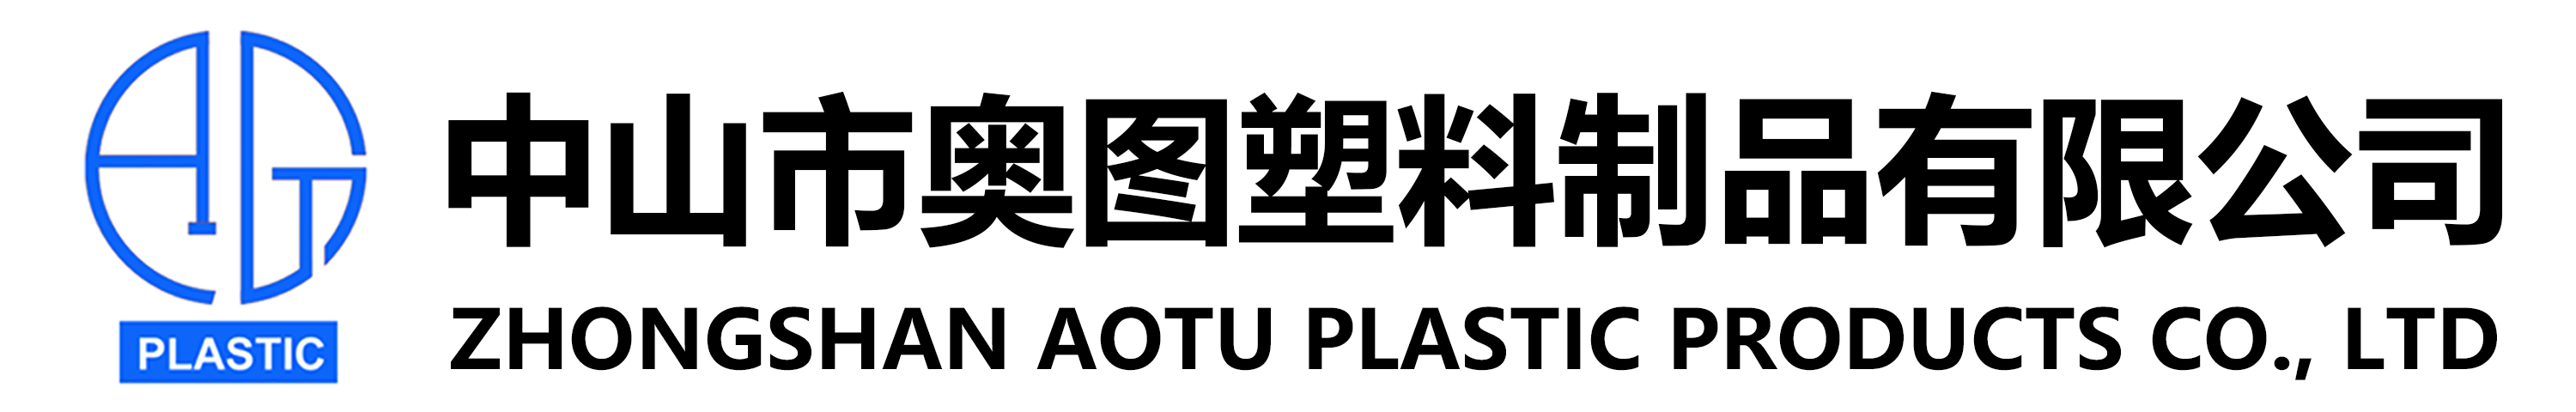 中山市奥图塑料制品有限公司